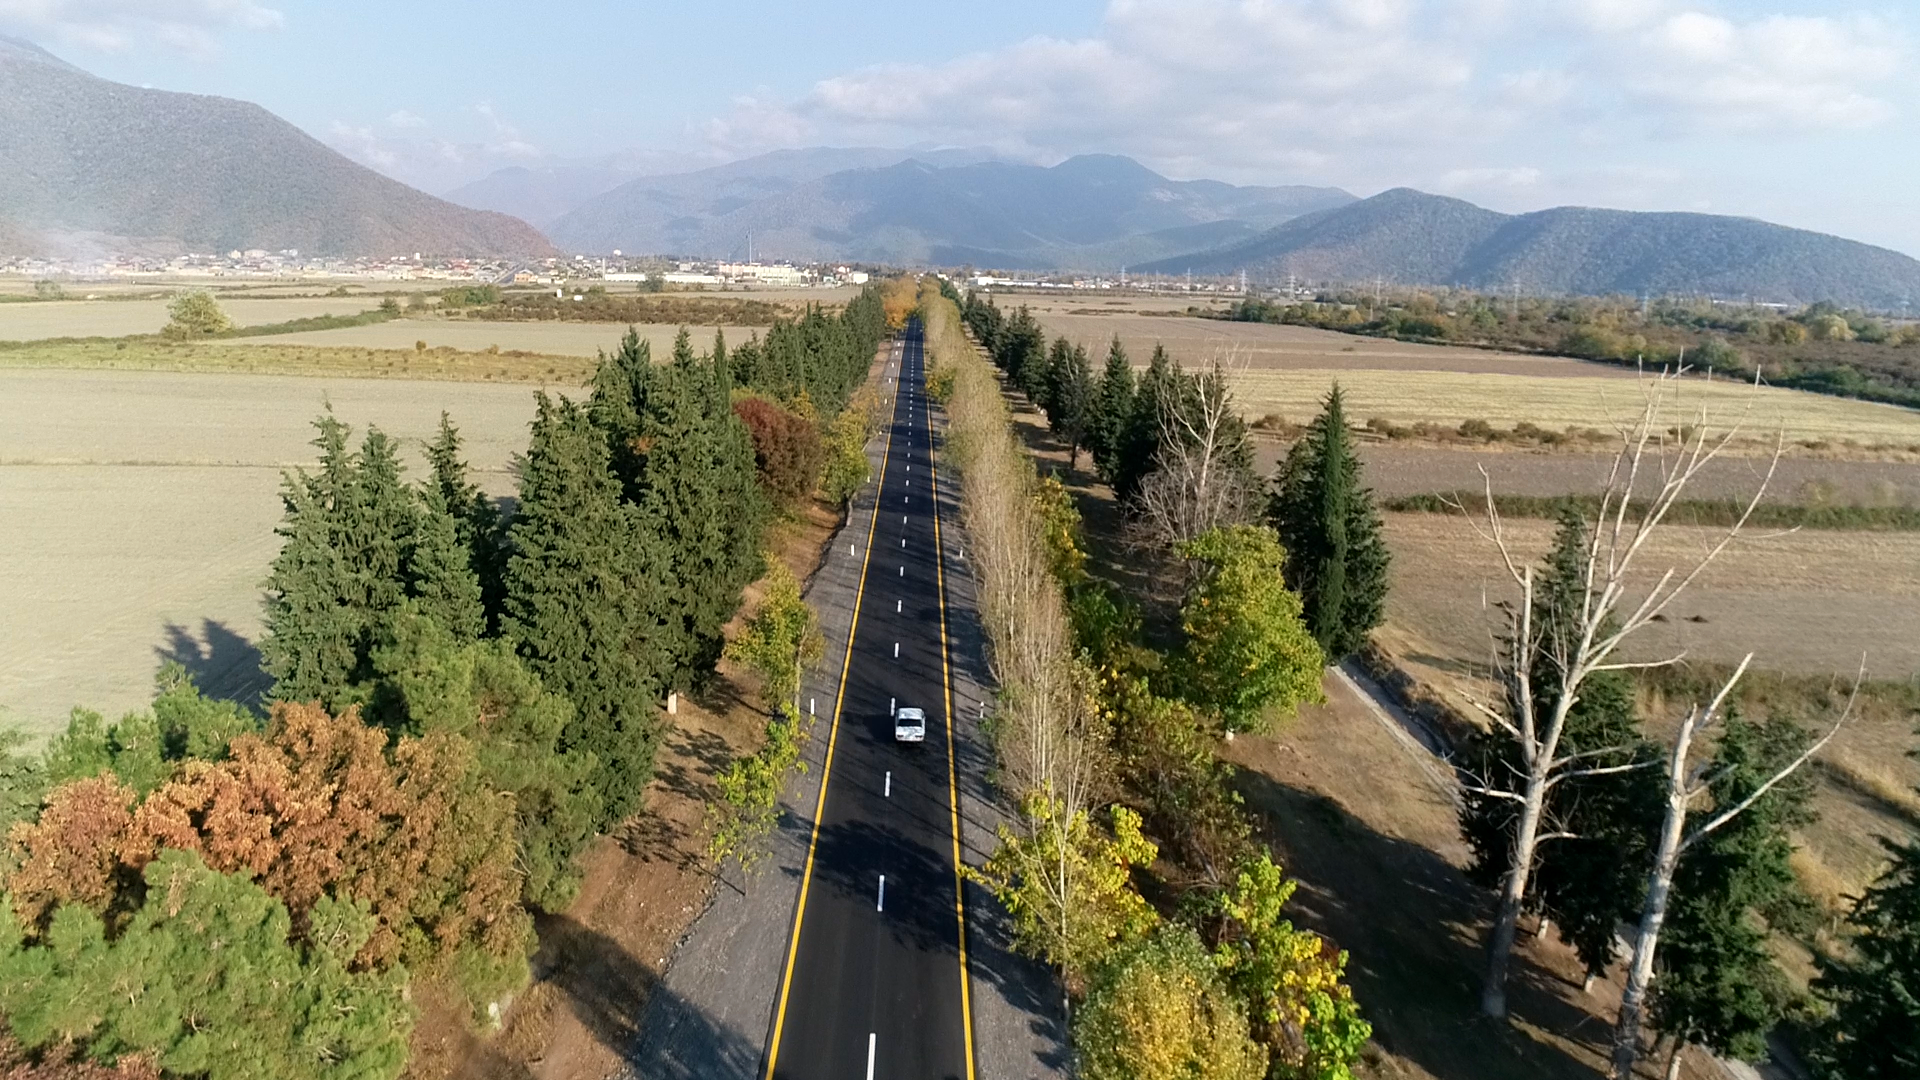 Qax-İlisu marşrutu üzrə 35.5 km uzunluğunda yol yenidən qurulub (FOTO) - Gallery Image